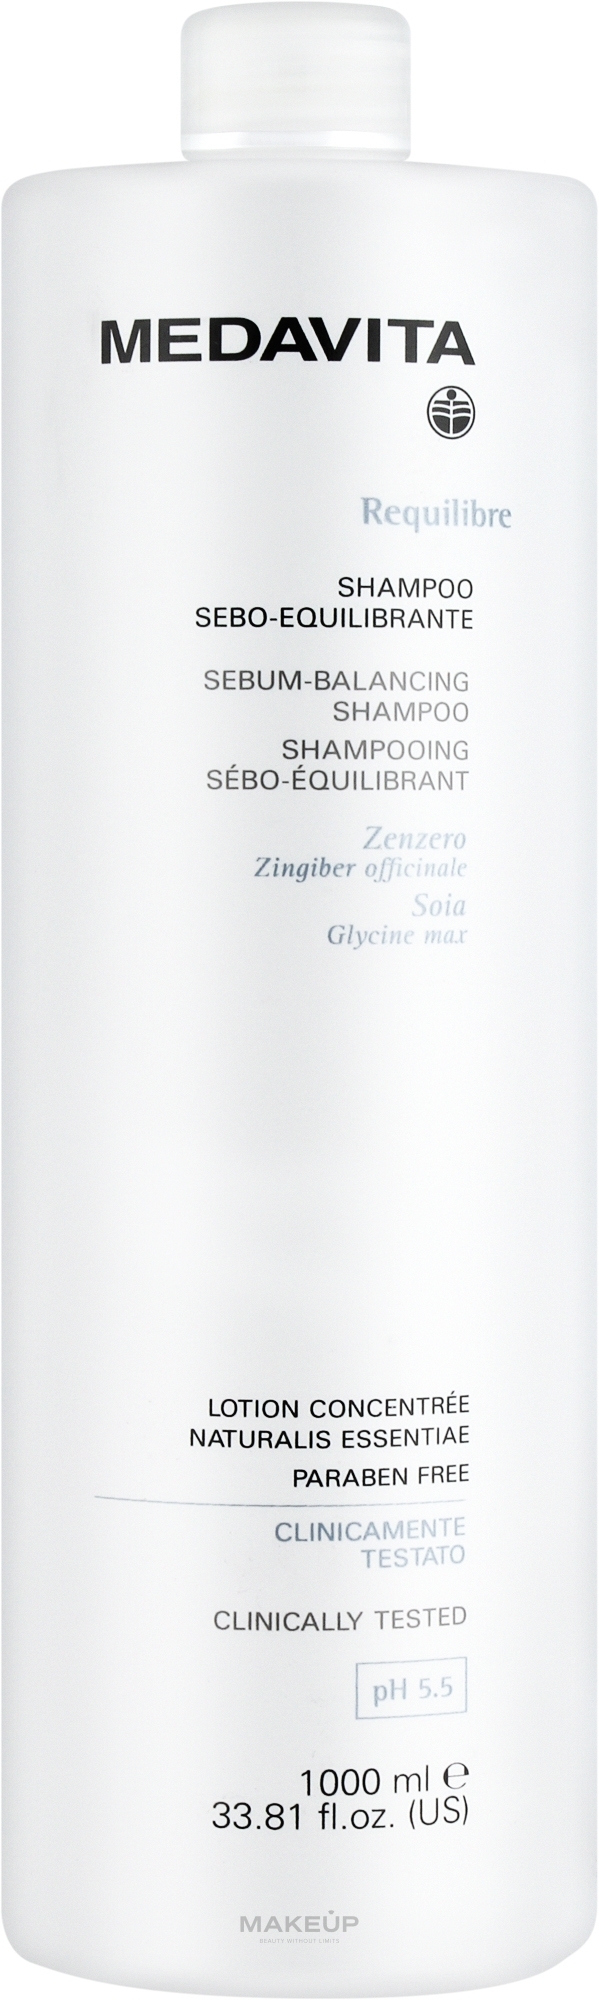 Себорегулирующий шампунь для кожи головы - Medavita Requilibre Sebum Balancing Shampoo — фото 1000ml